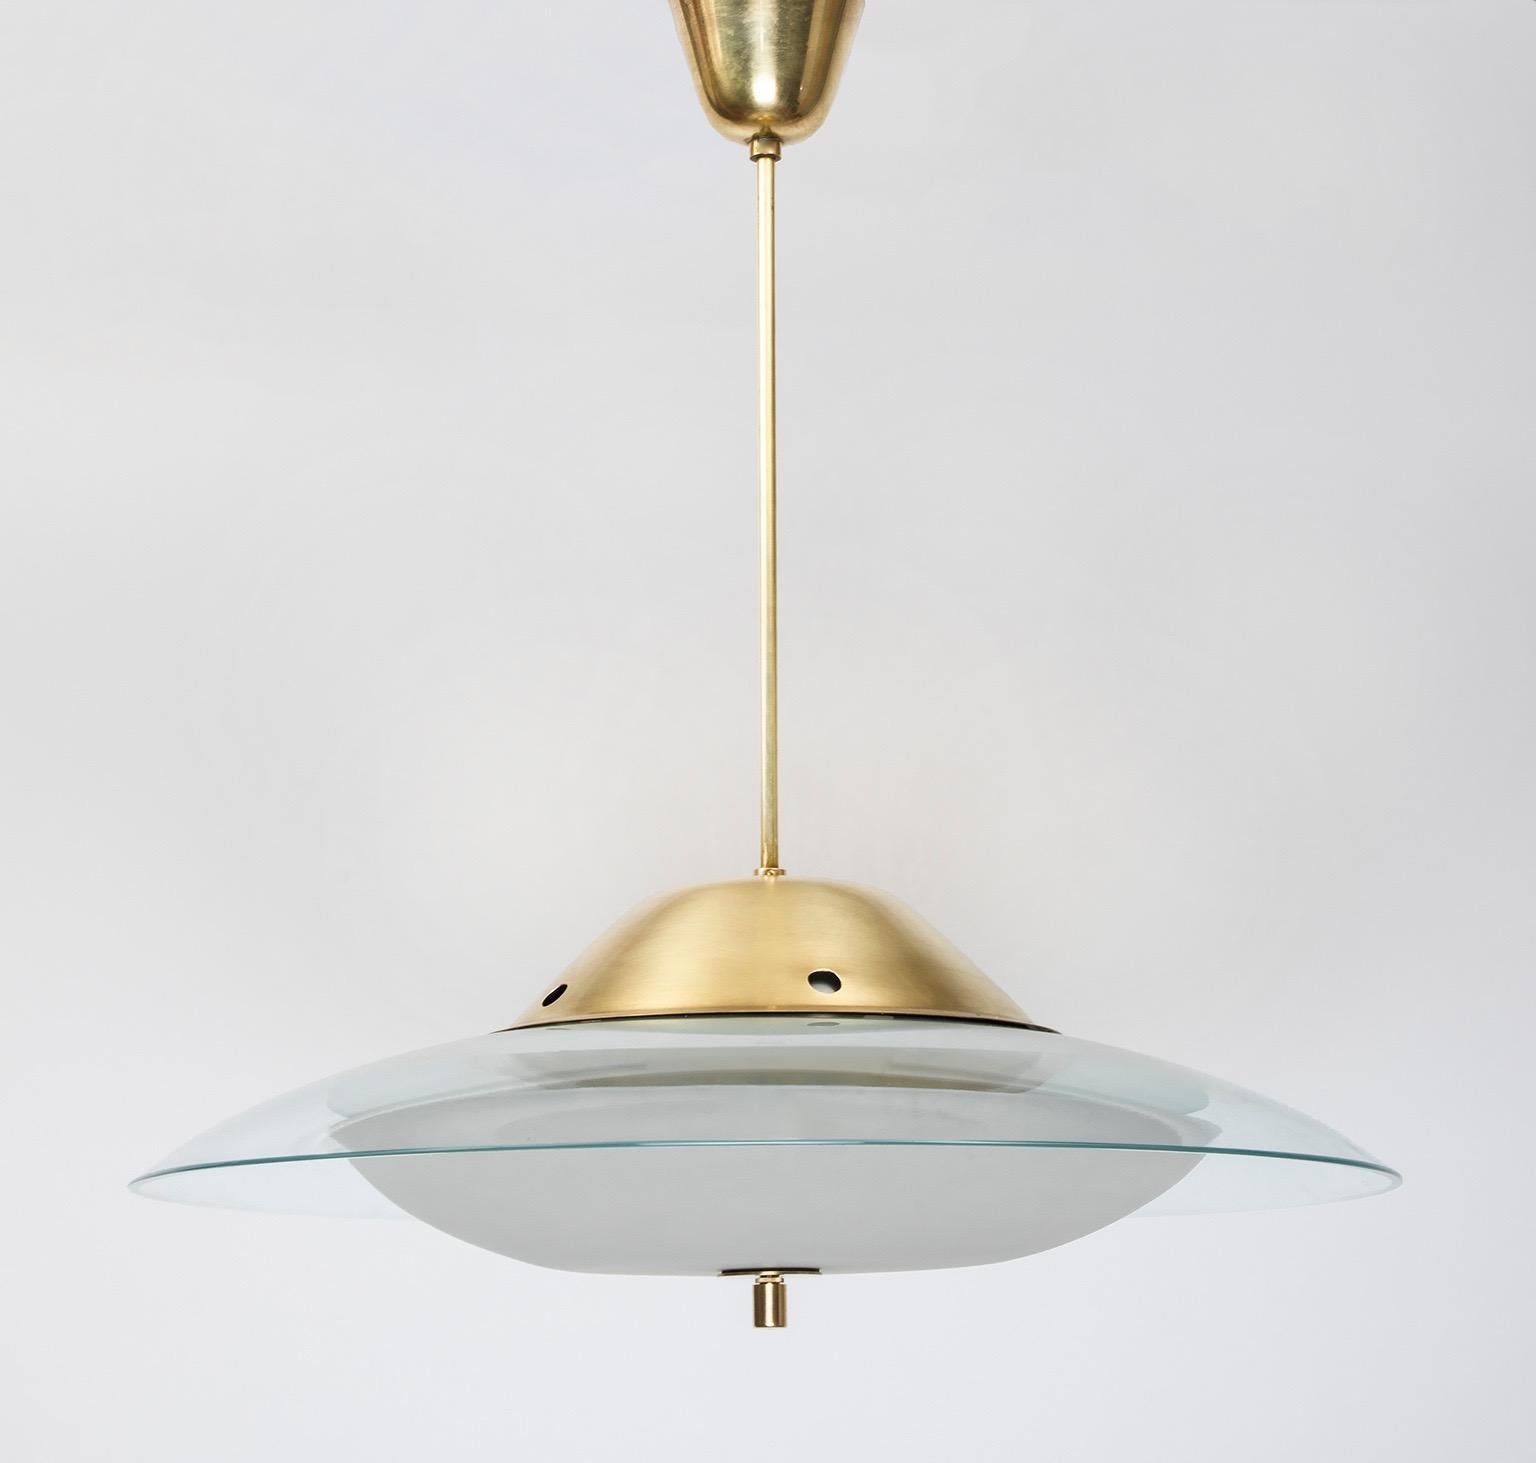 Max Ingrand (1908-1969)

Lustre gracieux et minimaliste de Max Ingrand pour Fontana Arte, avec un bol en verre dépoli et un grand abat-jour en cristal courbé contrasté, soutenu par de minces ferrures en laiton poli. 

Signé. 

24